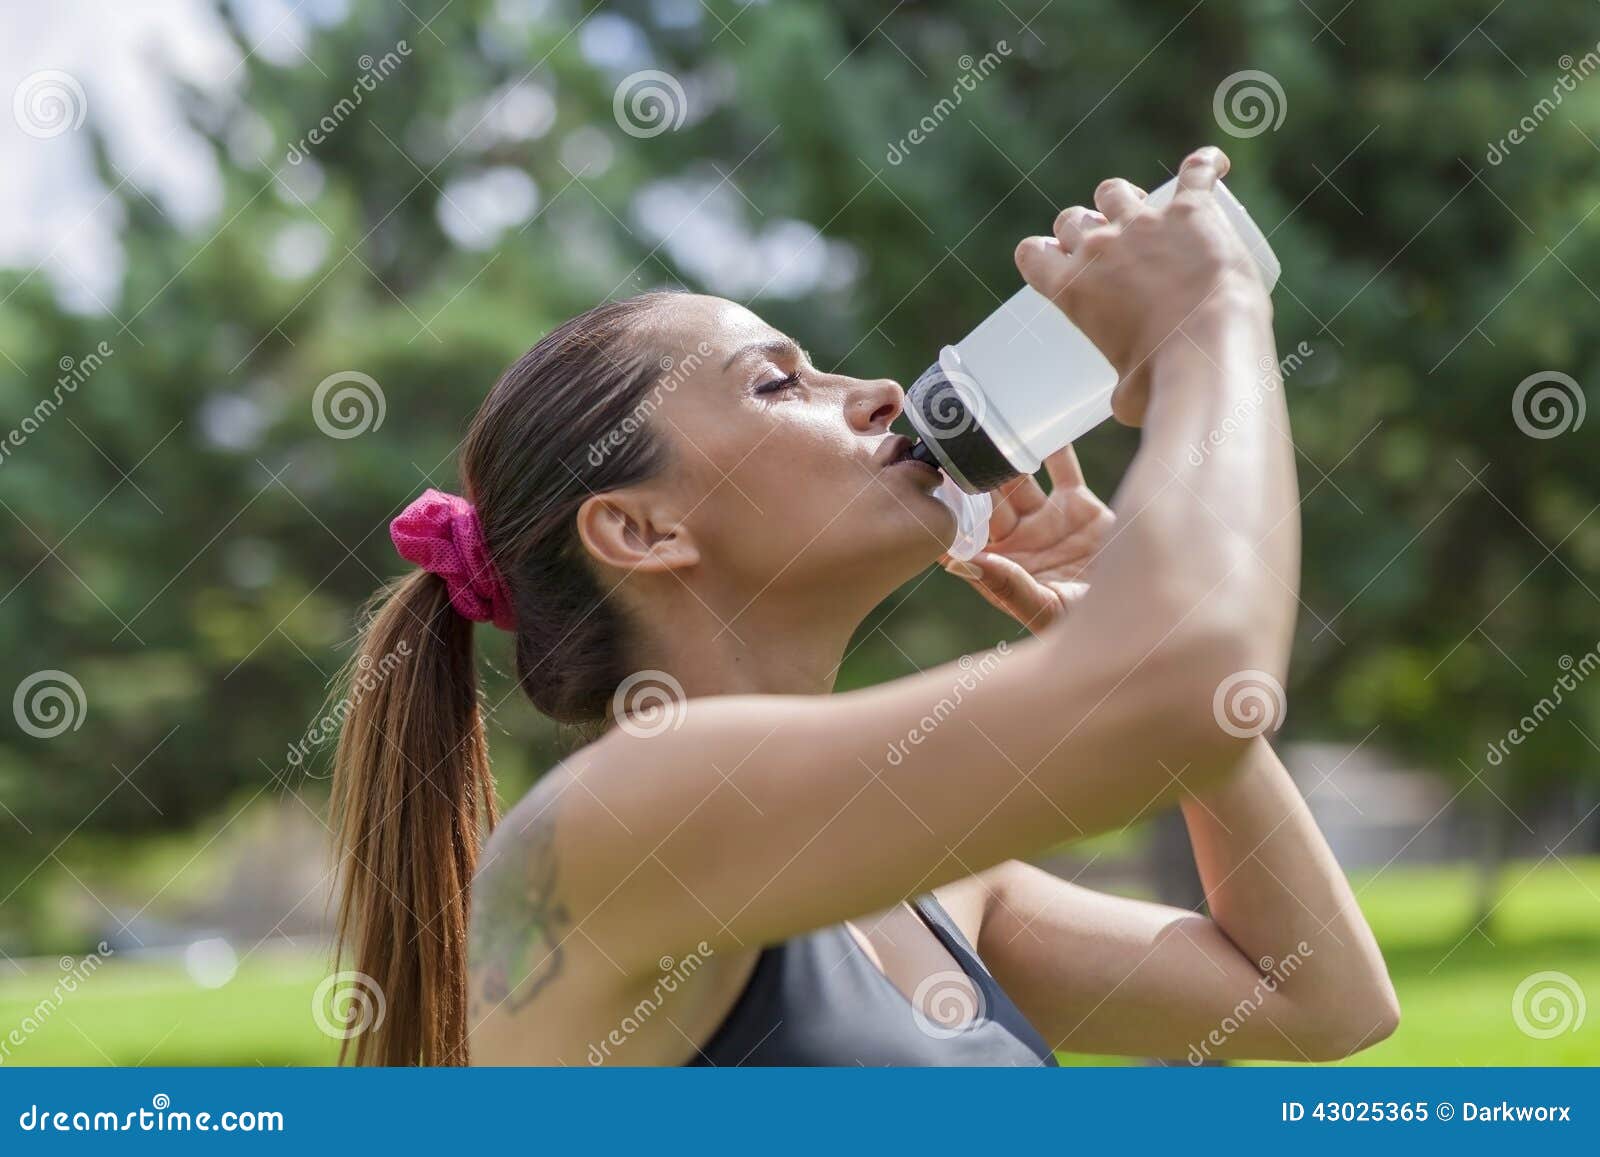 Διψασμένο νέο πόσιμο νερό γυναικών στηργμένος. Φωτογραφία κινηματογραφήσεων σε πρώτο πλάνο του πόσιμου νερού γυναικών στηργμένος Υπάρχει εκλεκτική εστίαση στο πρότυπο